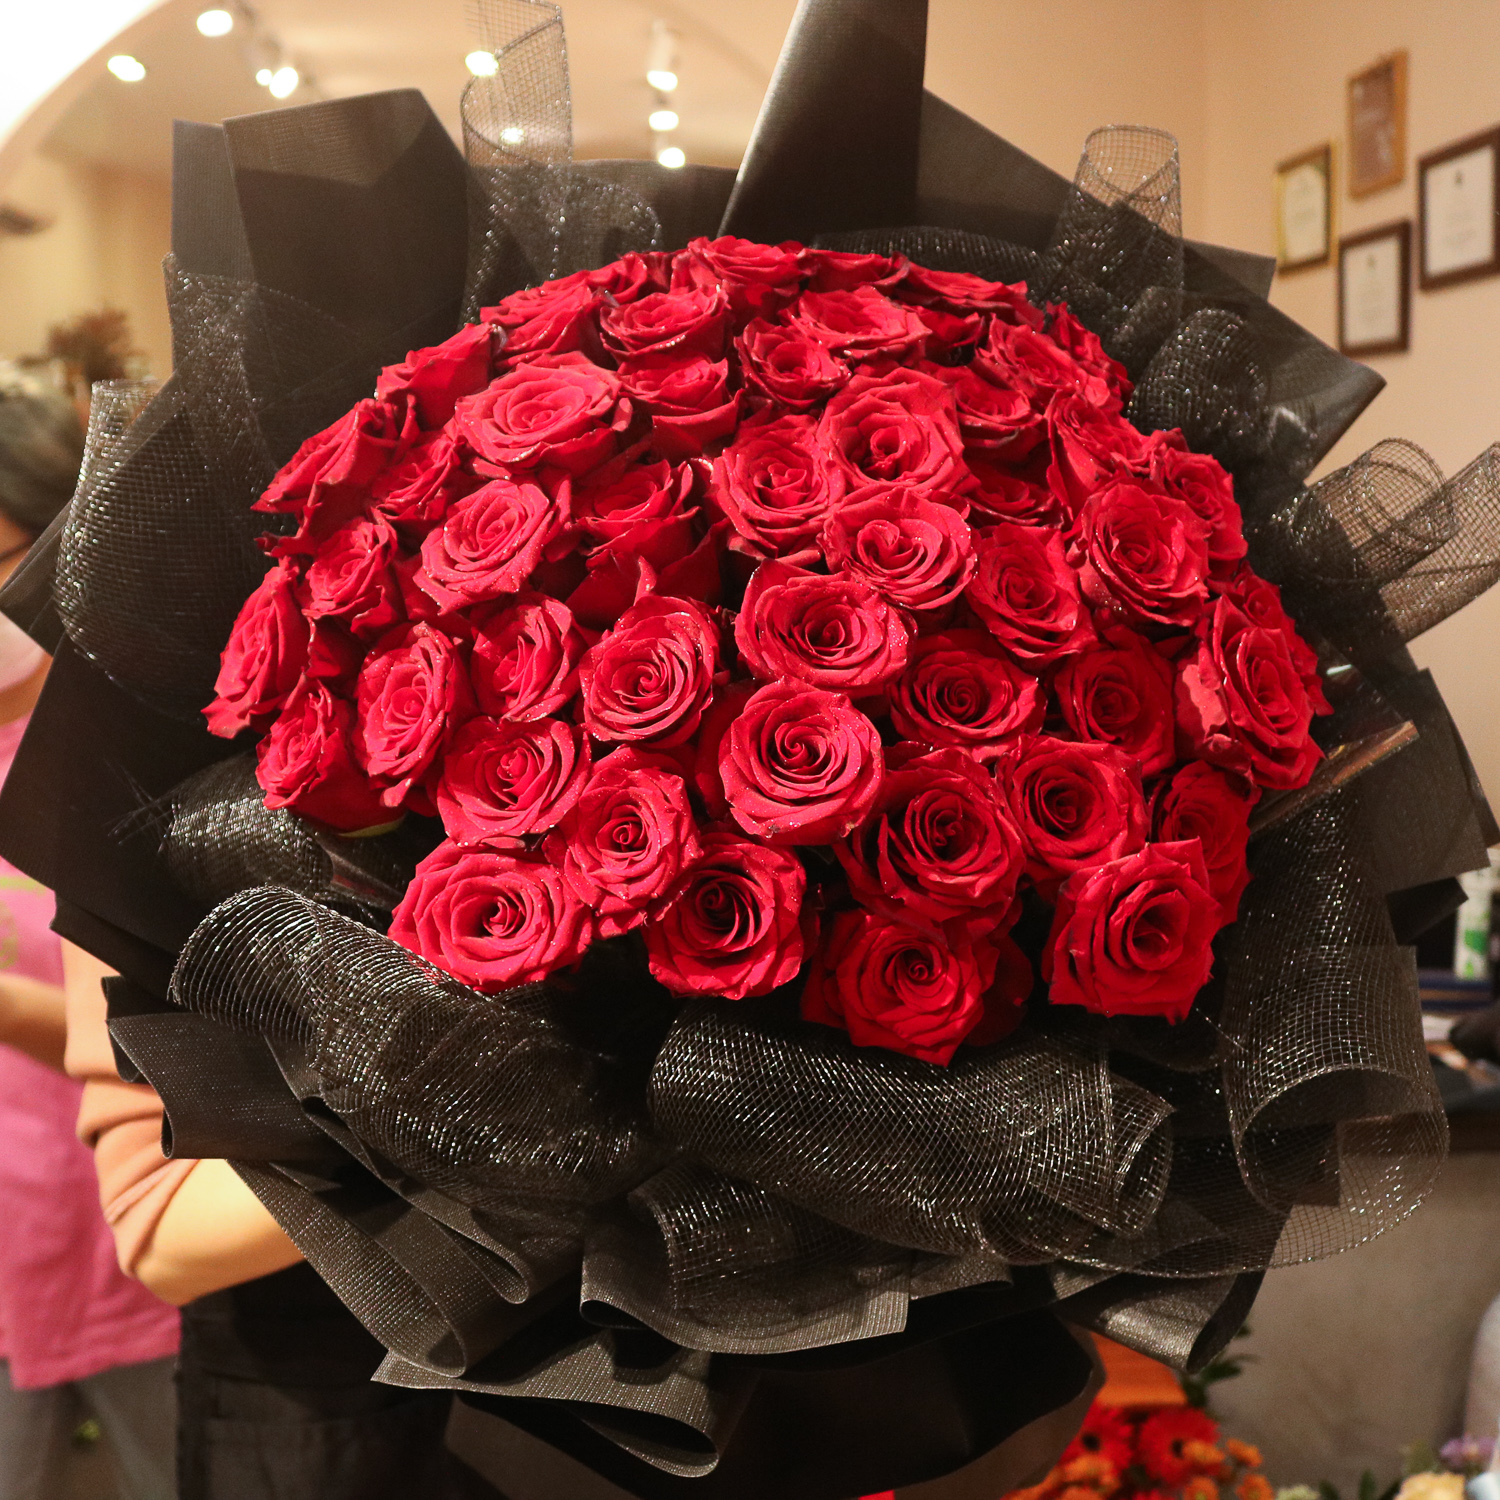 Womens Day  Hãy dành bó hoa đẹp nhất cho người bạn yêu thương